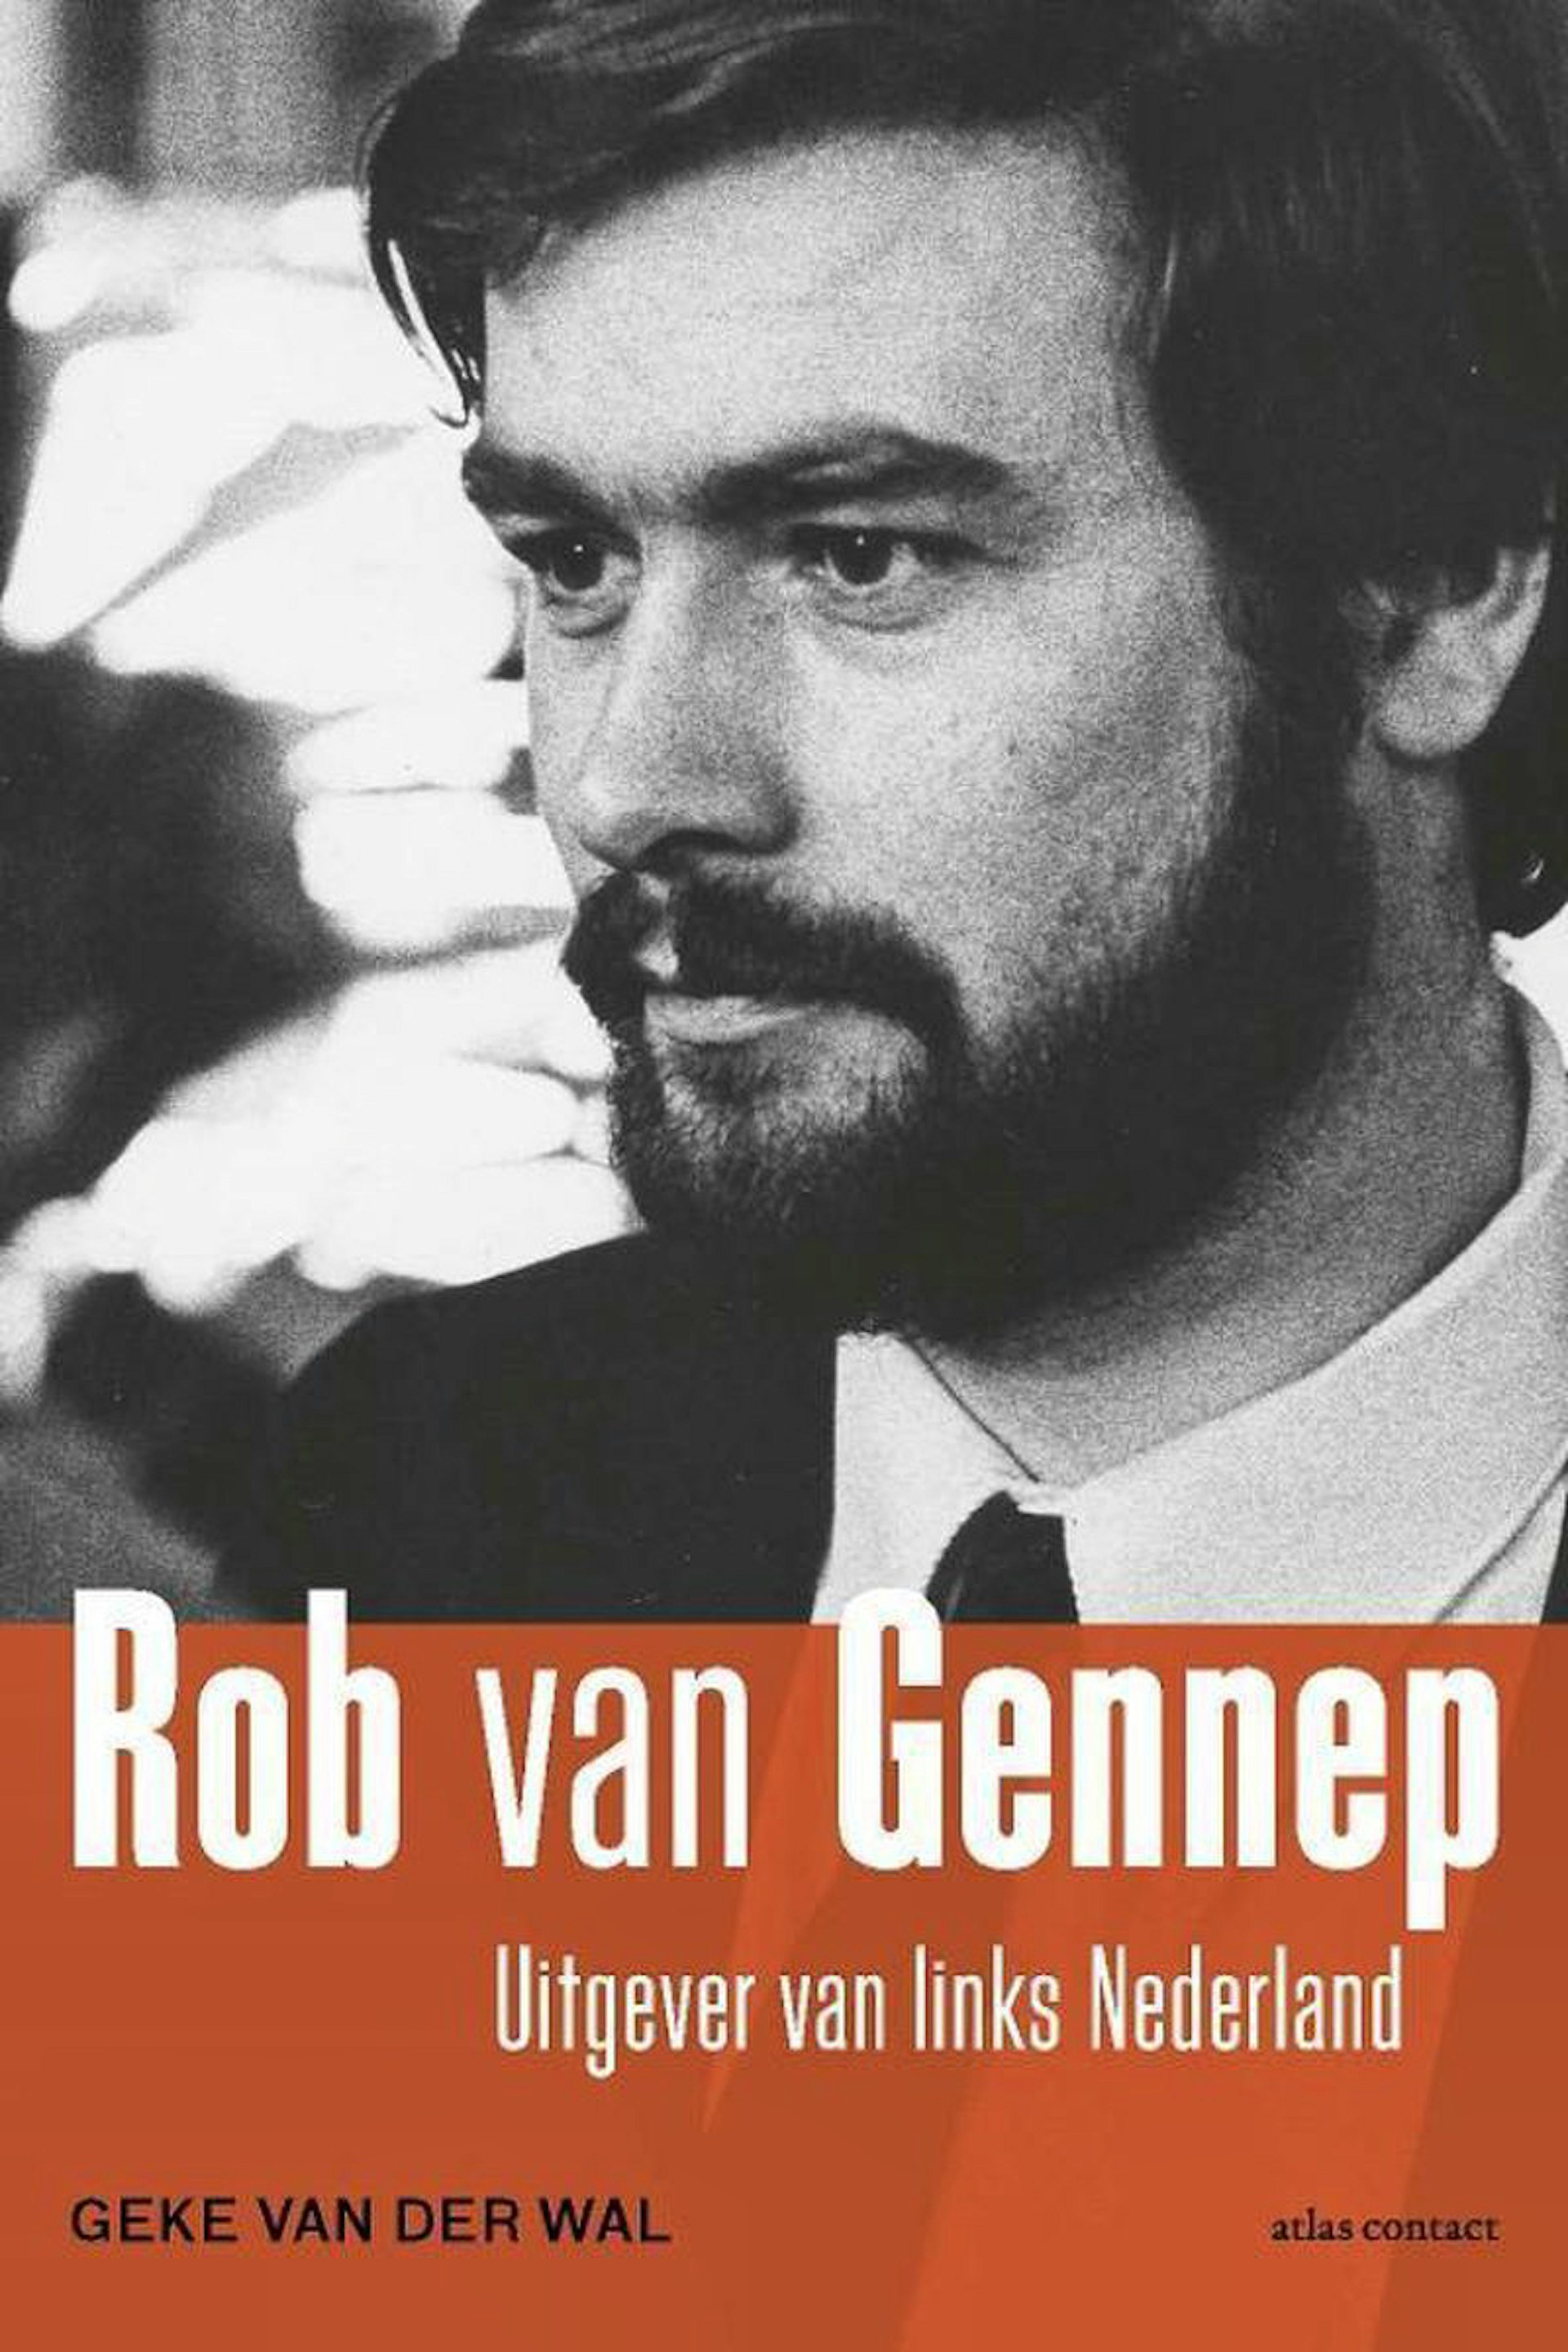 De biograaf spreekt over Rob van Gennep